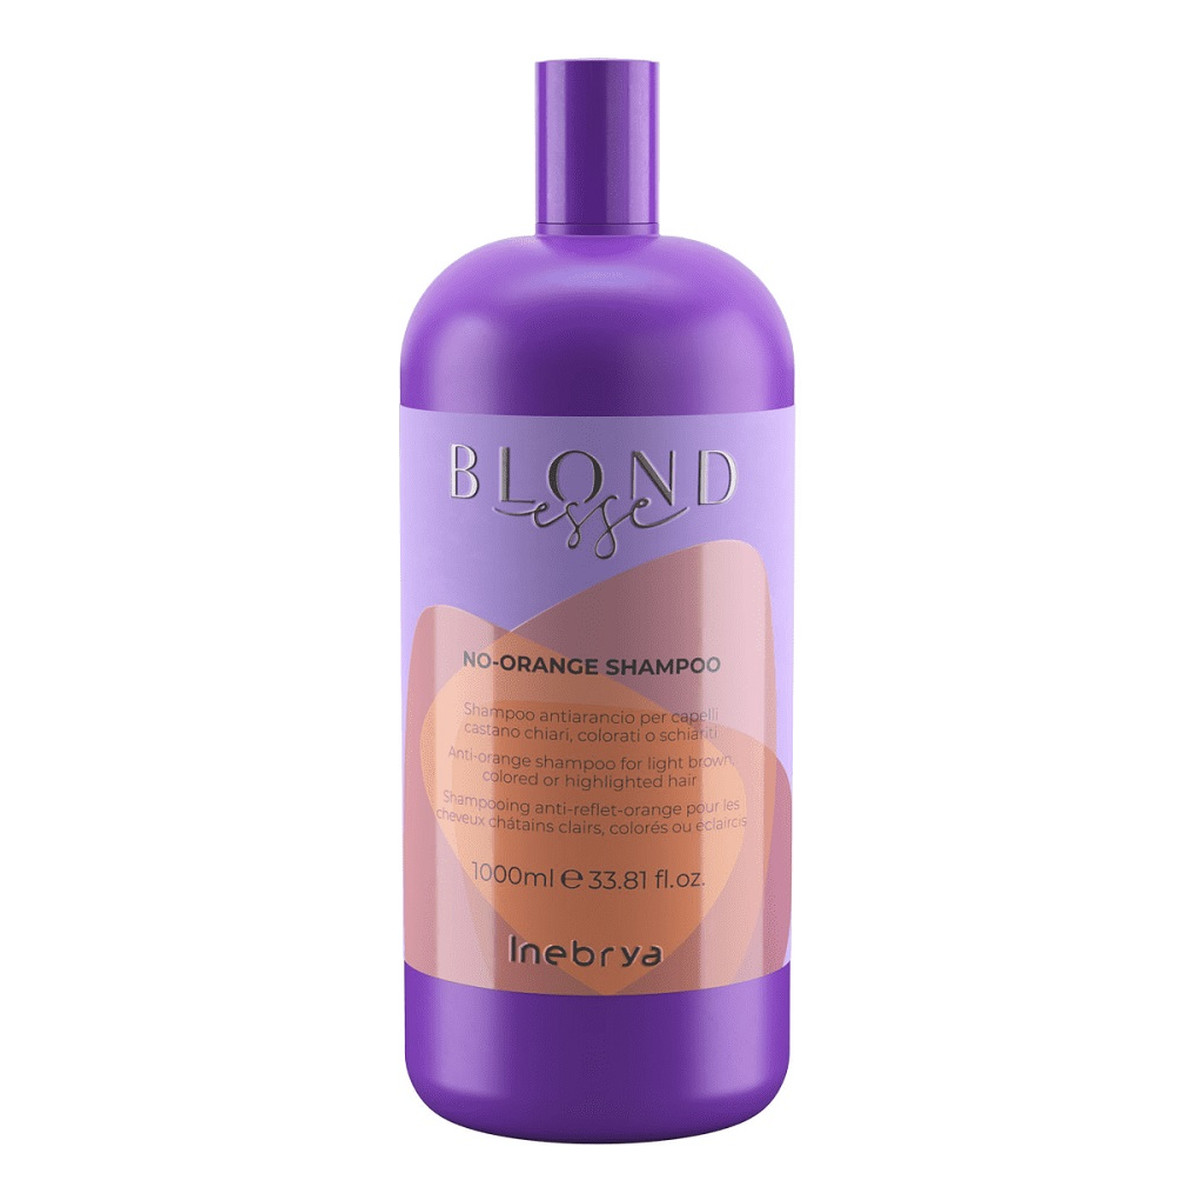 Inebrya Blondesse no-orange shampoo szampon do włosów jasnobrązowych farbowanych i rozjaśnianych 1000ml